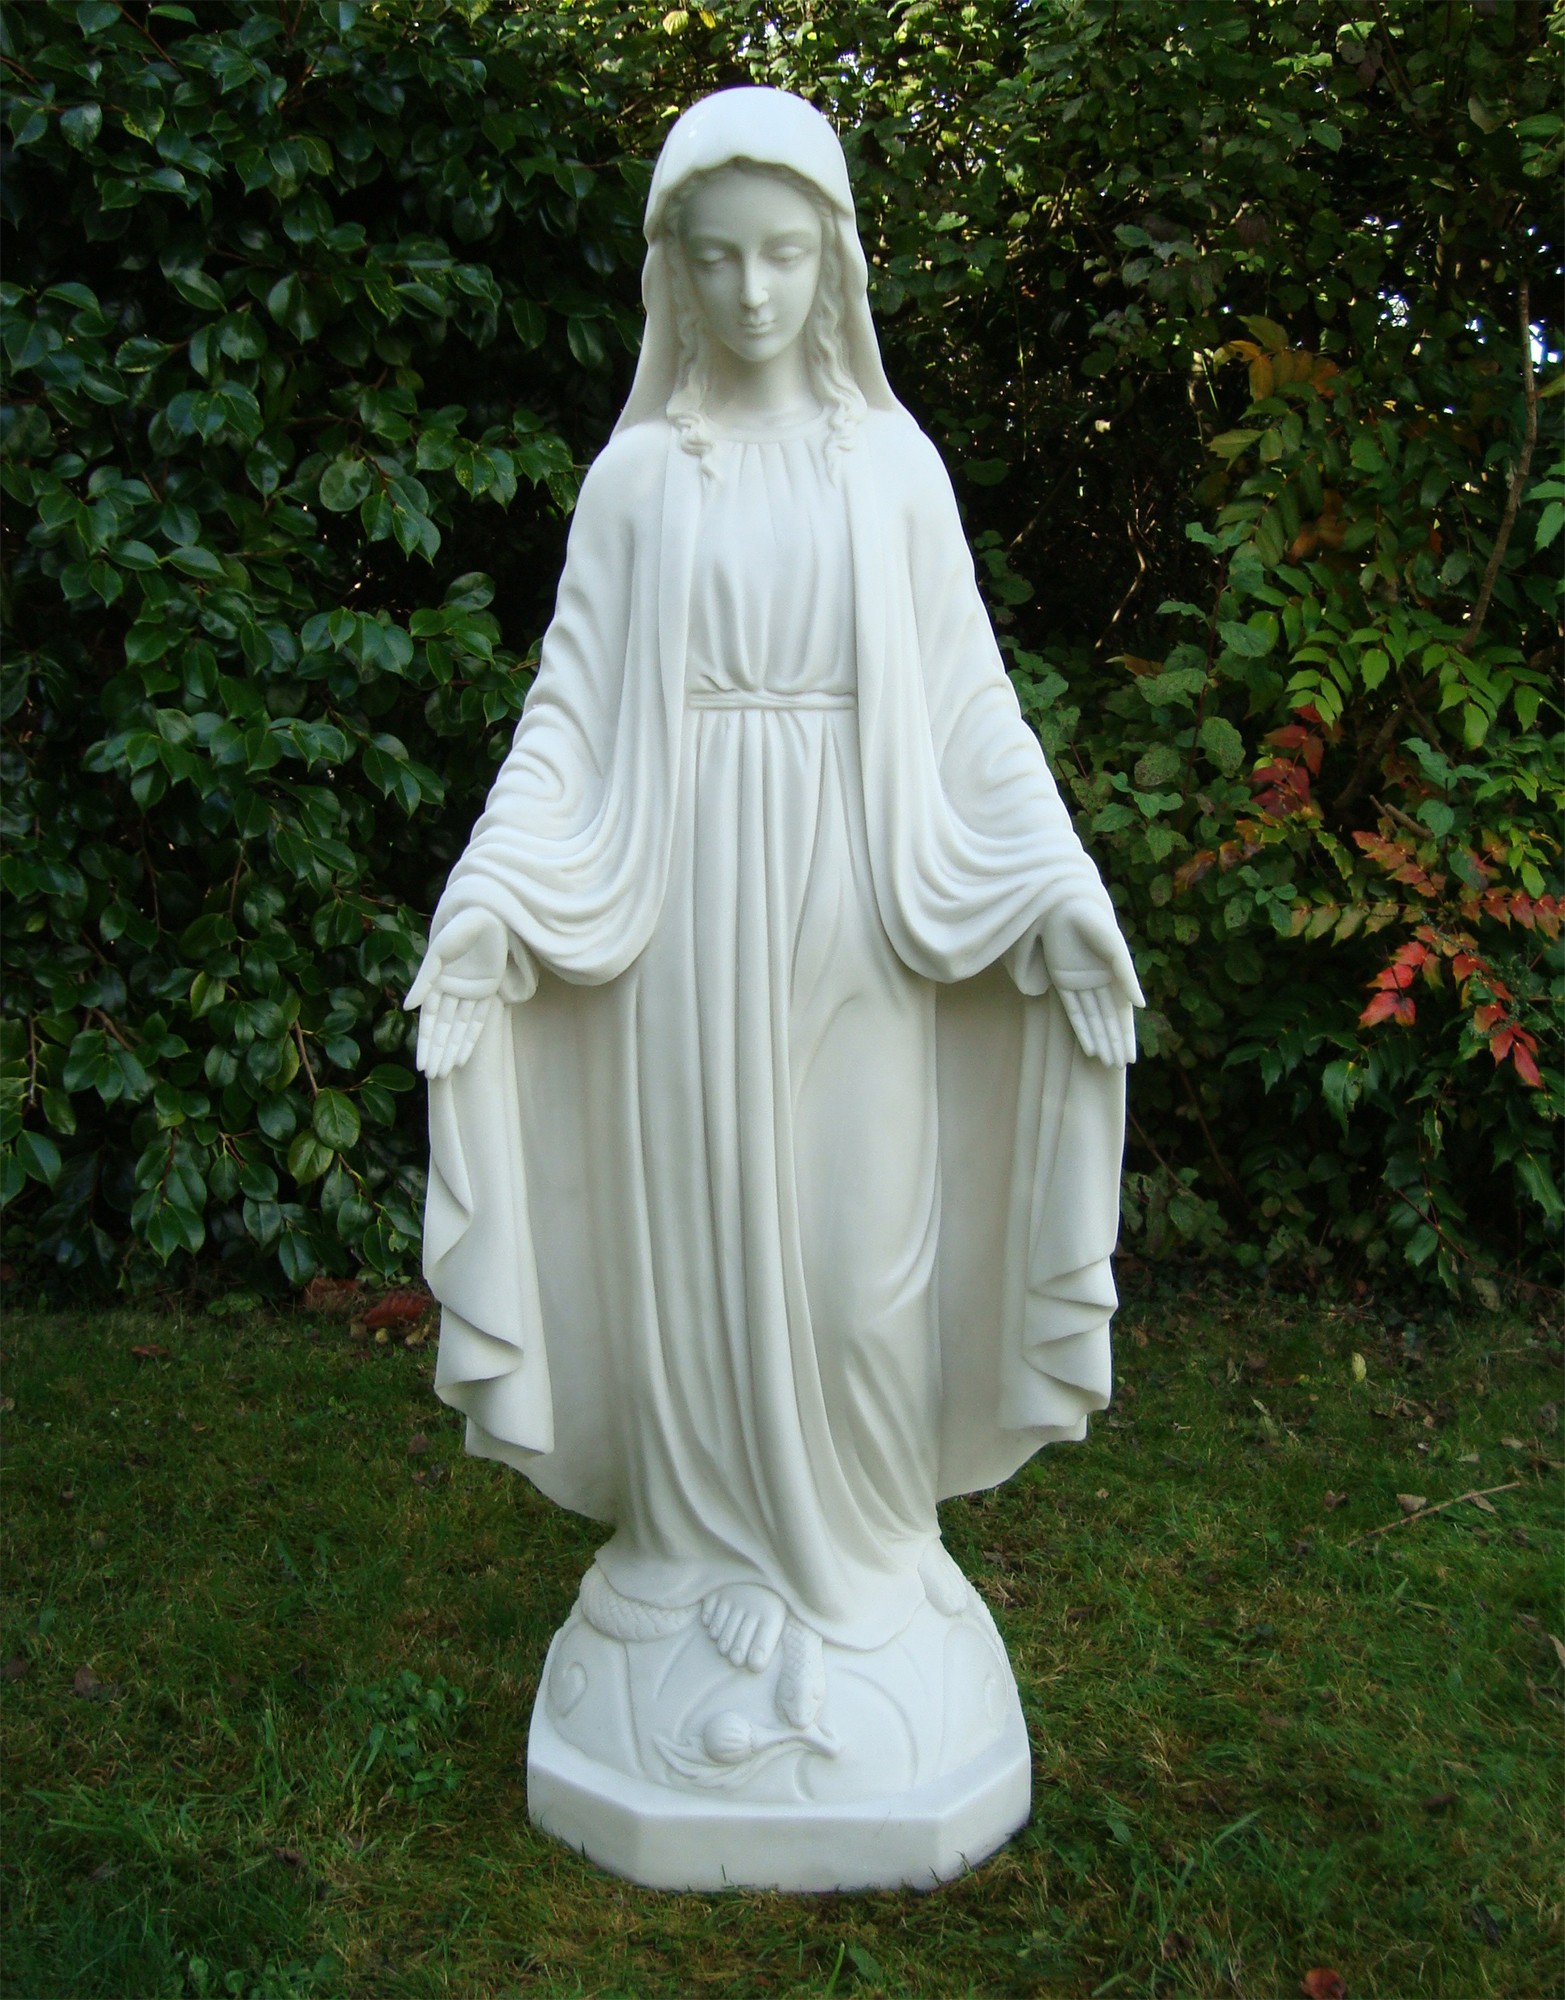 Religious Virgin Mary Statue - Garden Sculpture Art | S&S Shop